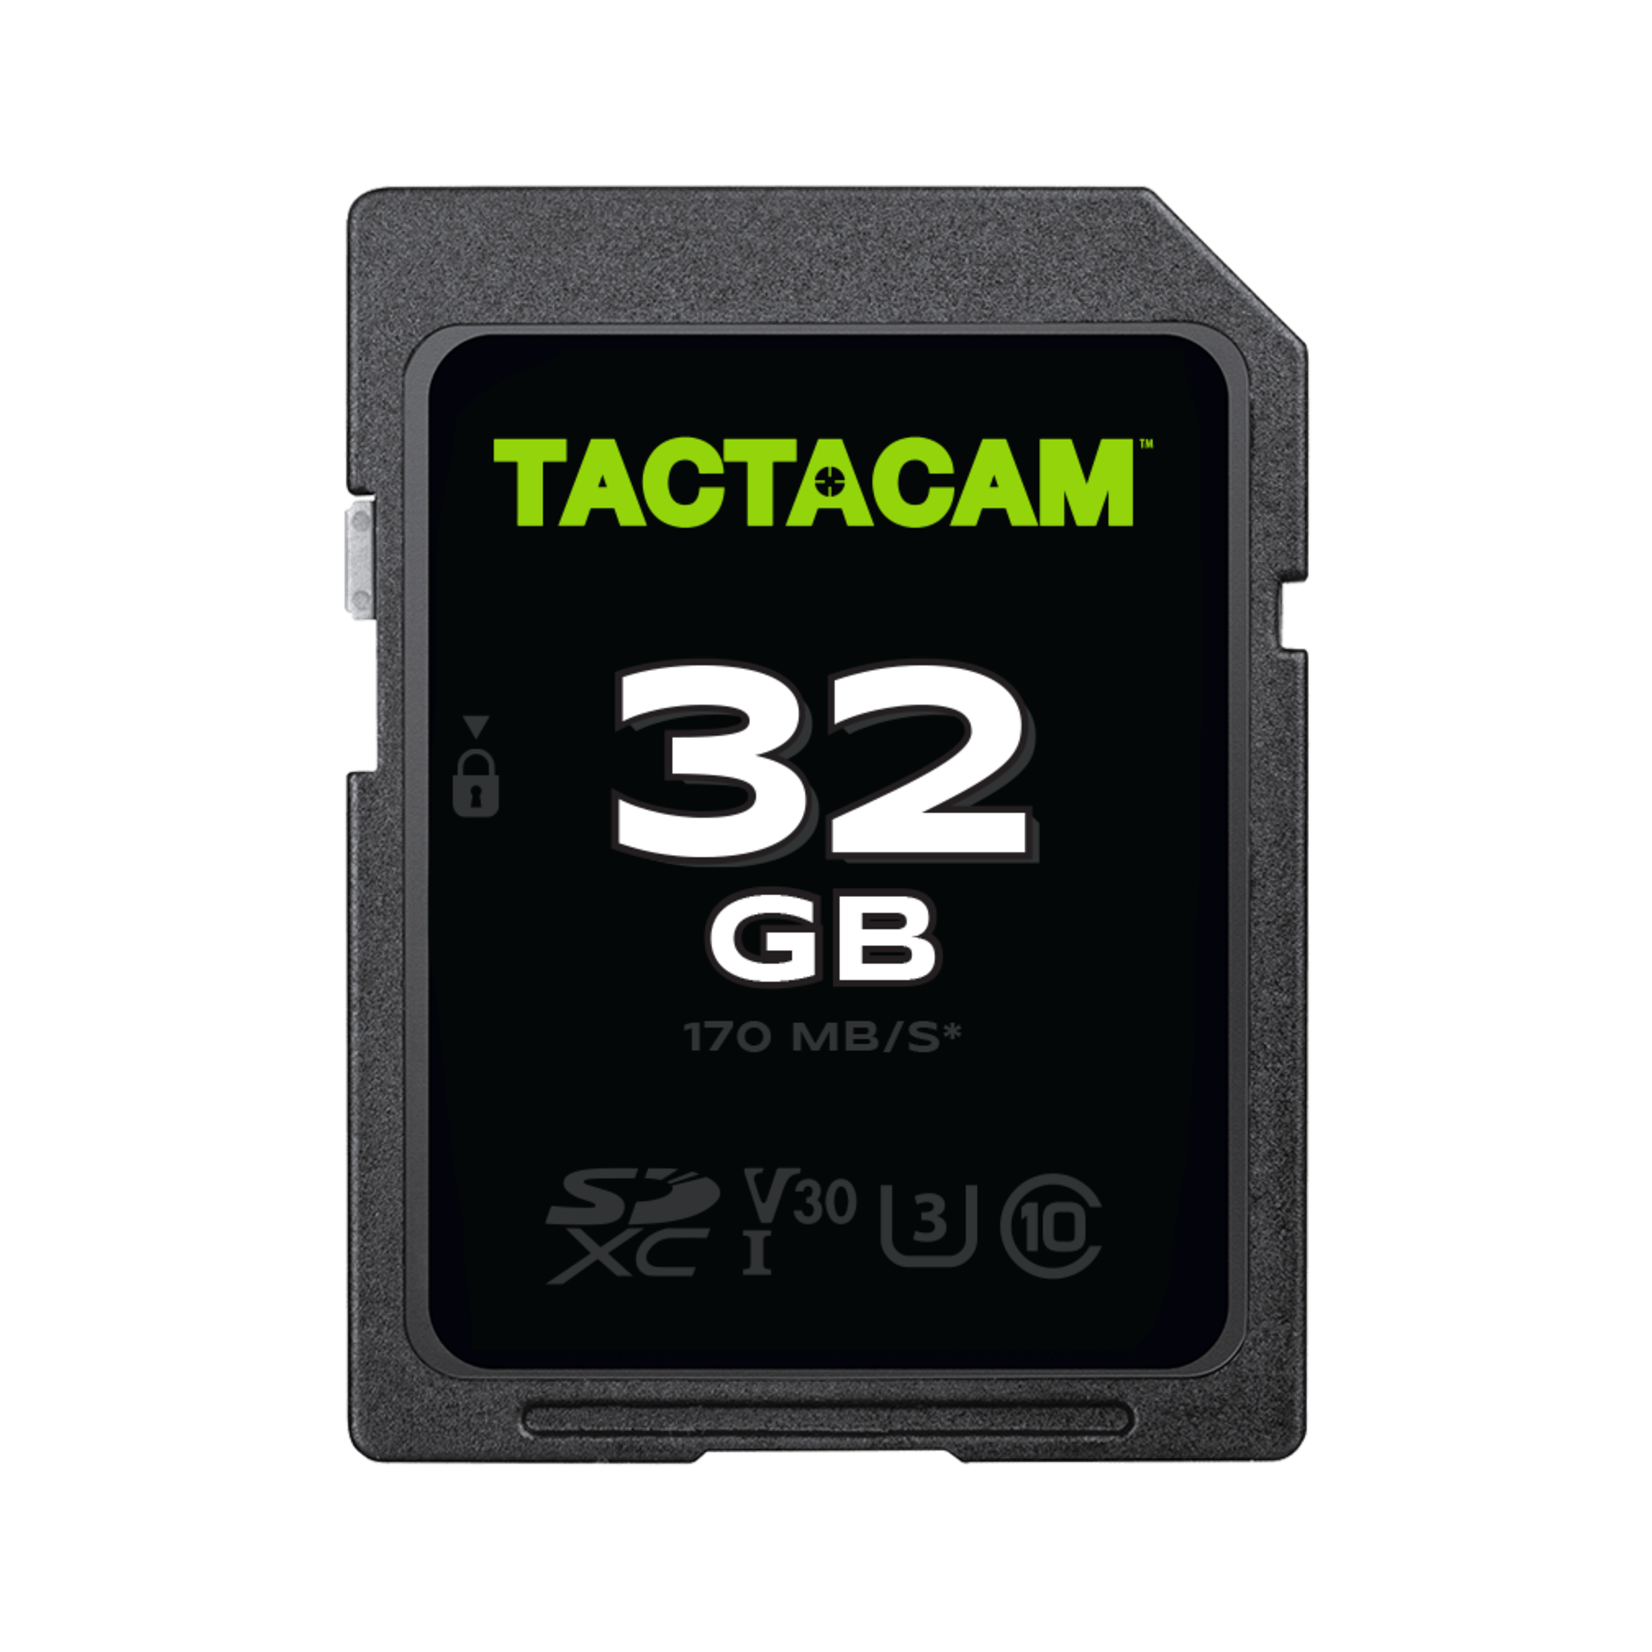 Tactacam Tactacam Reveal X Pro Solar Trail Camera Package